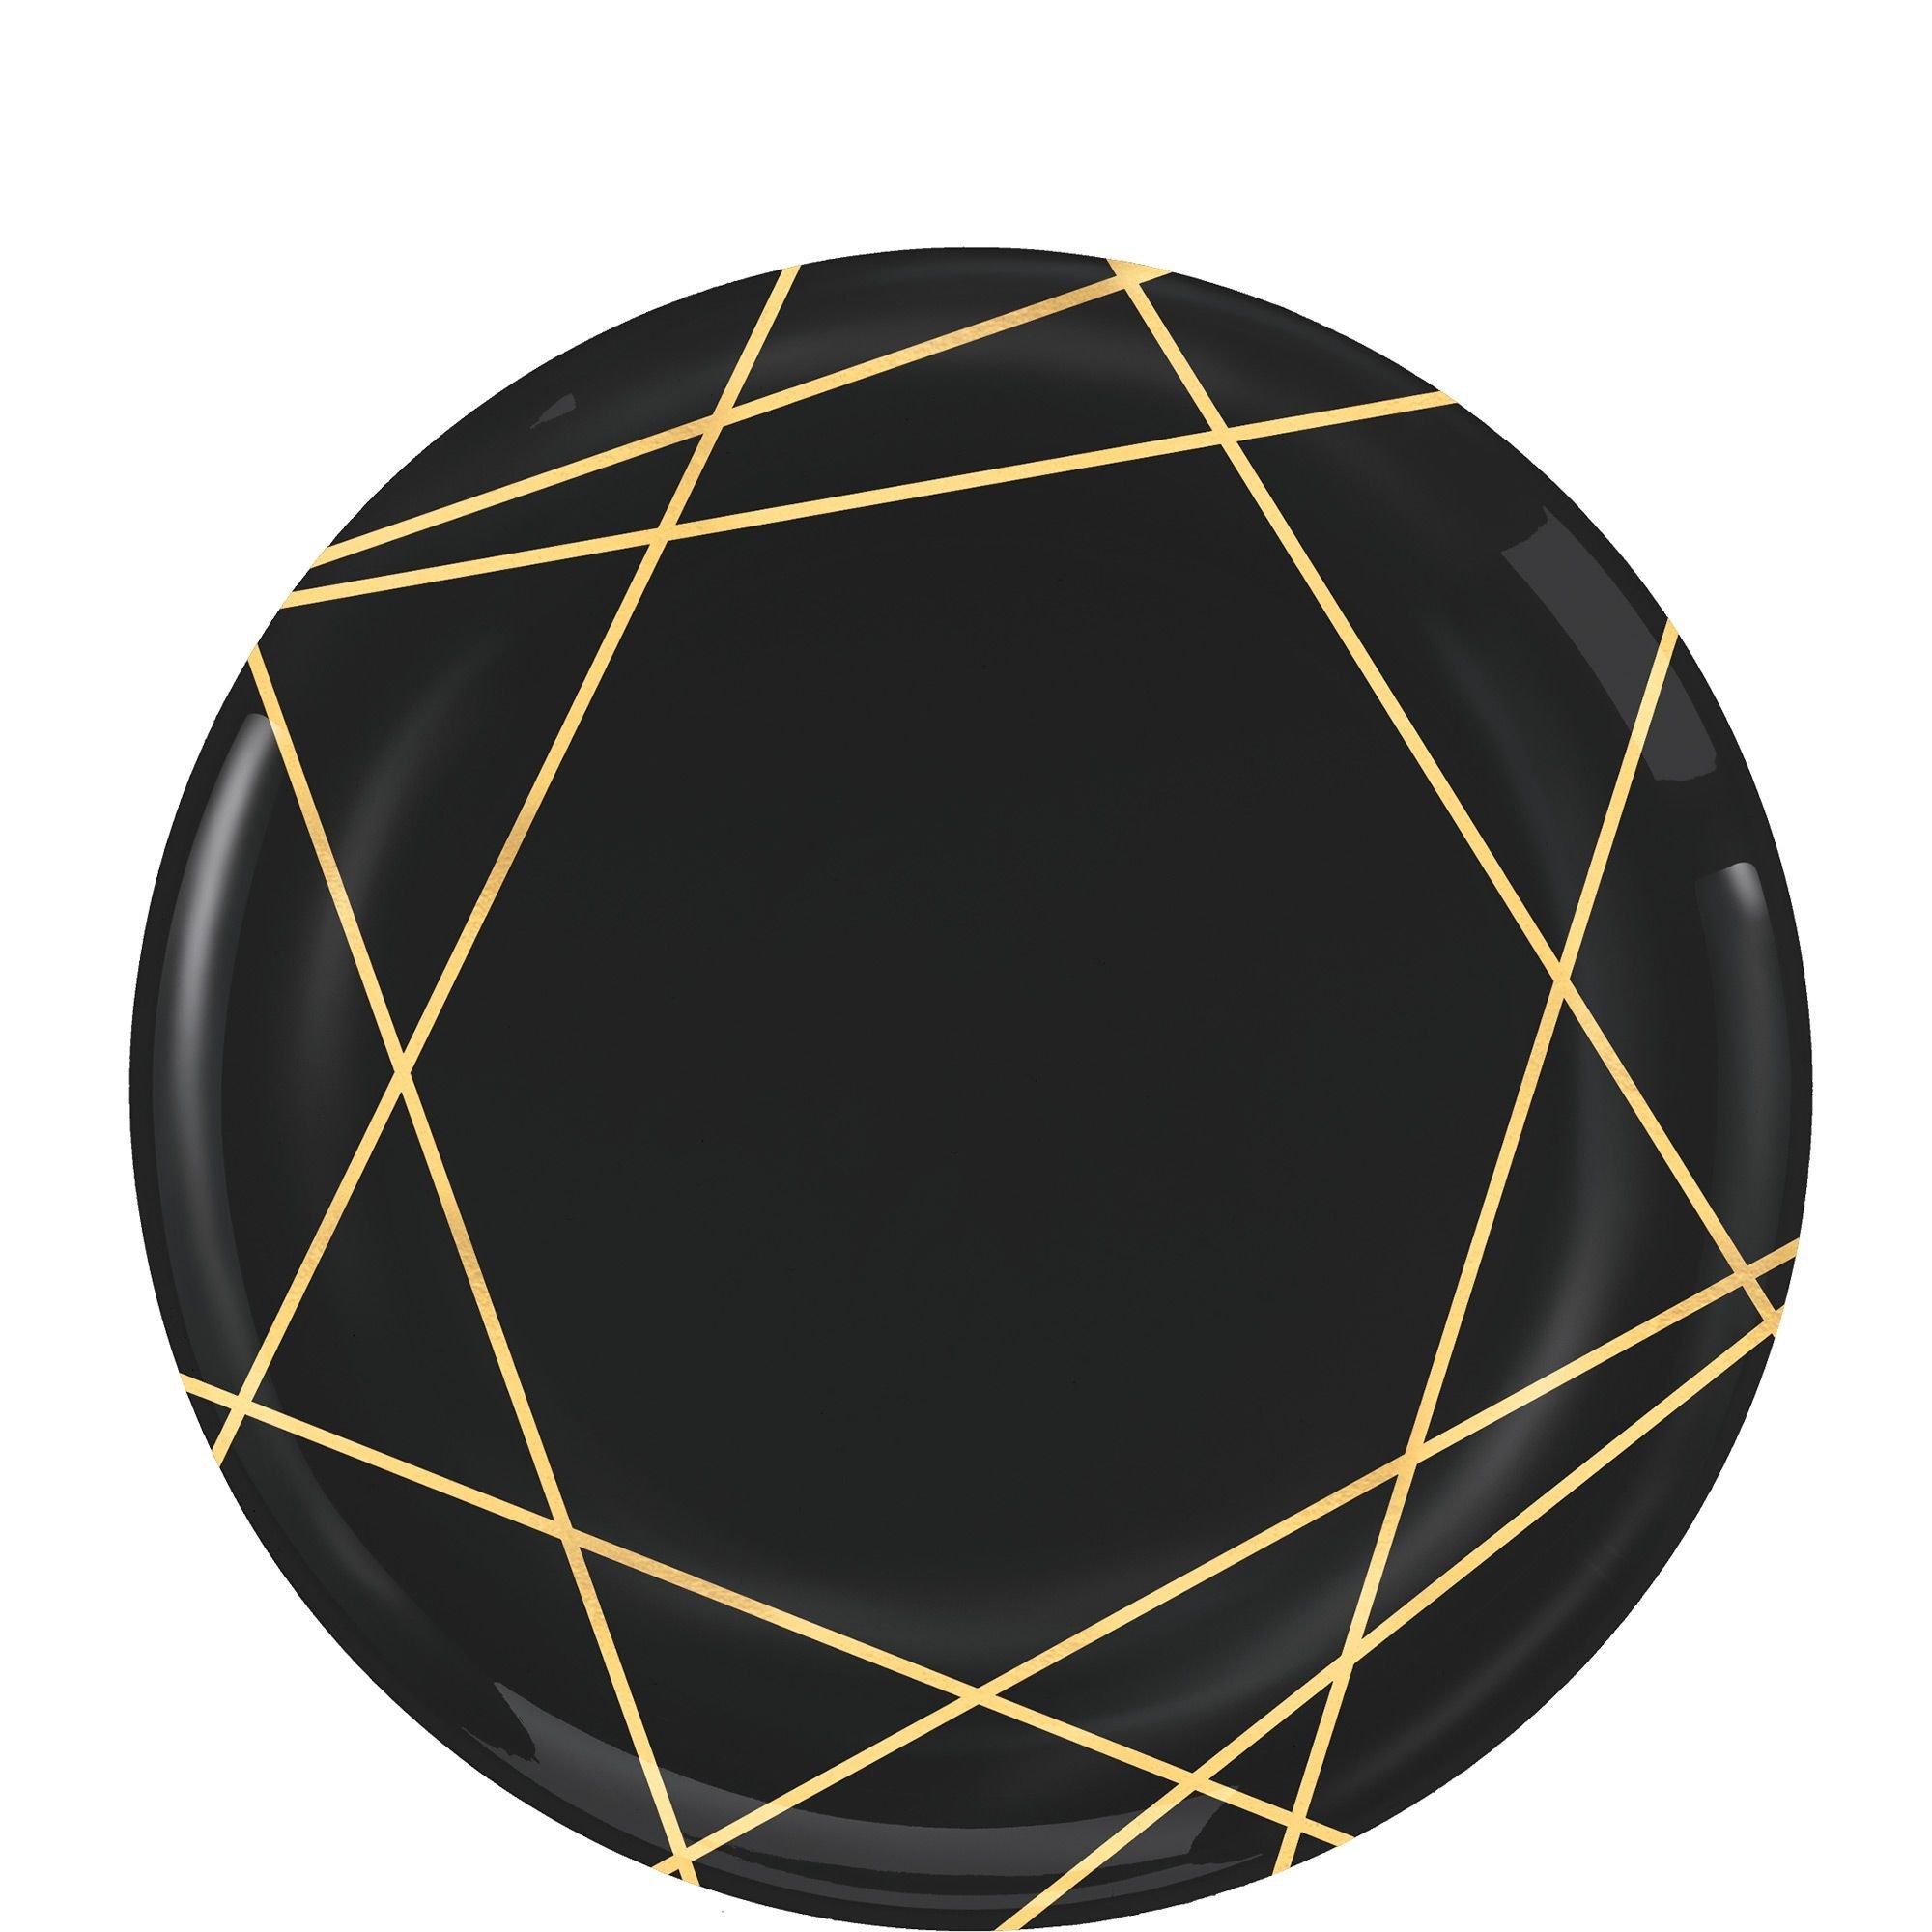 Black & Gold Geometric Premium Plastic Dessert Plates, 7.5in, 20ct